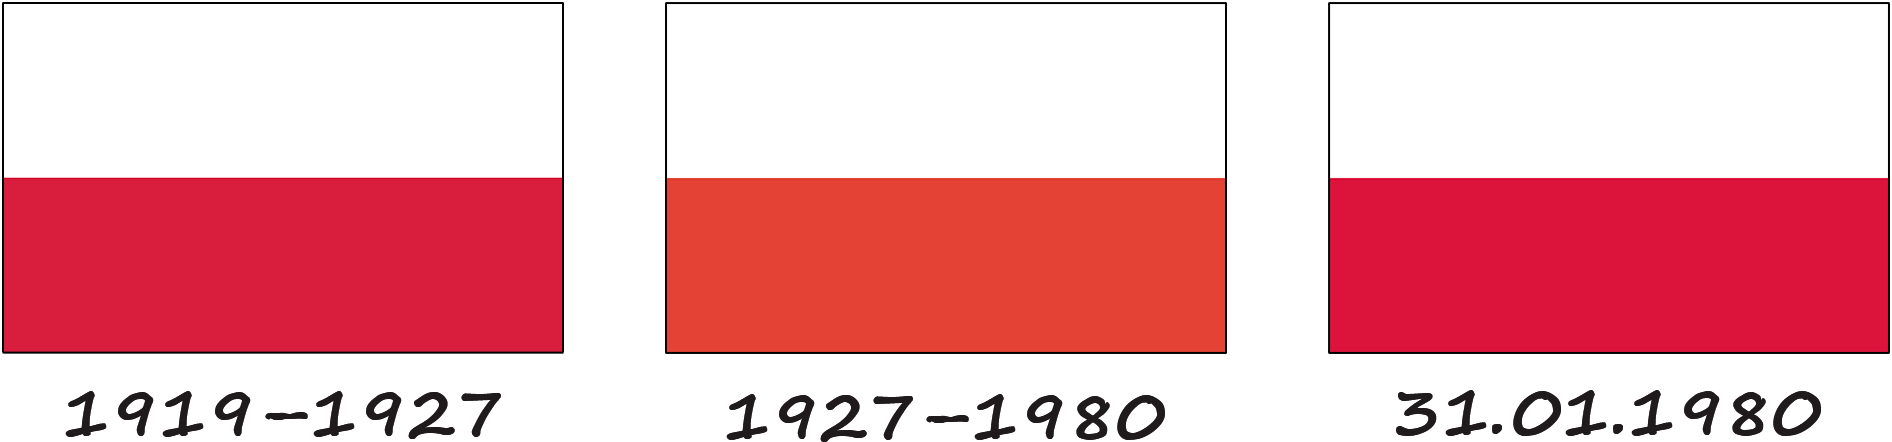 Historia de la bandera polaca